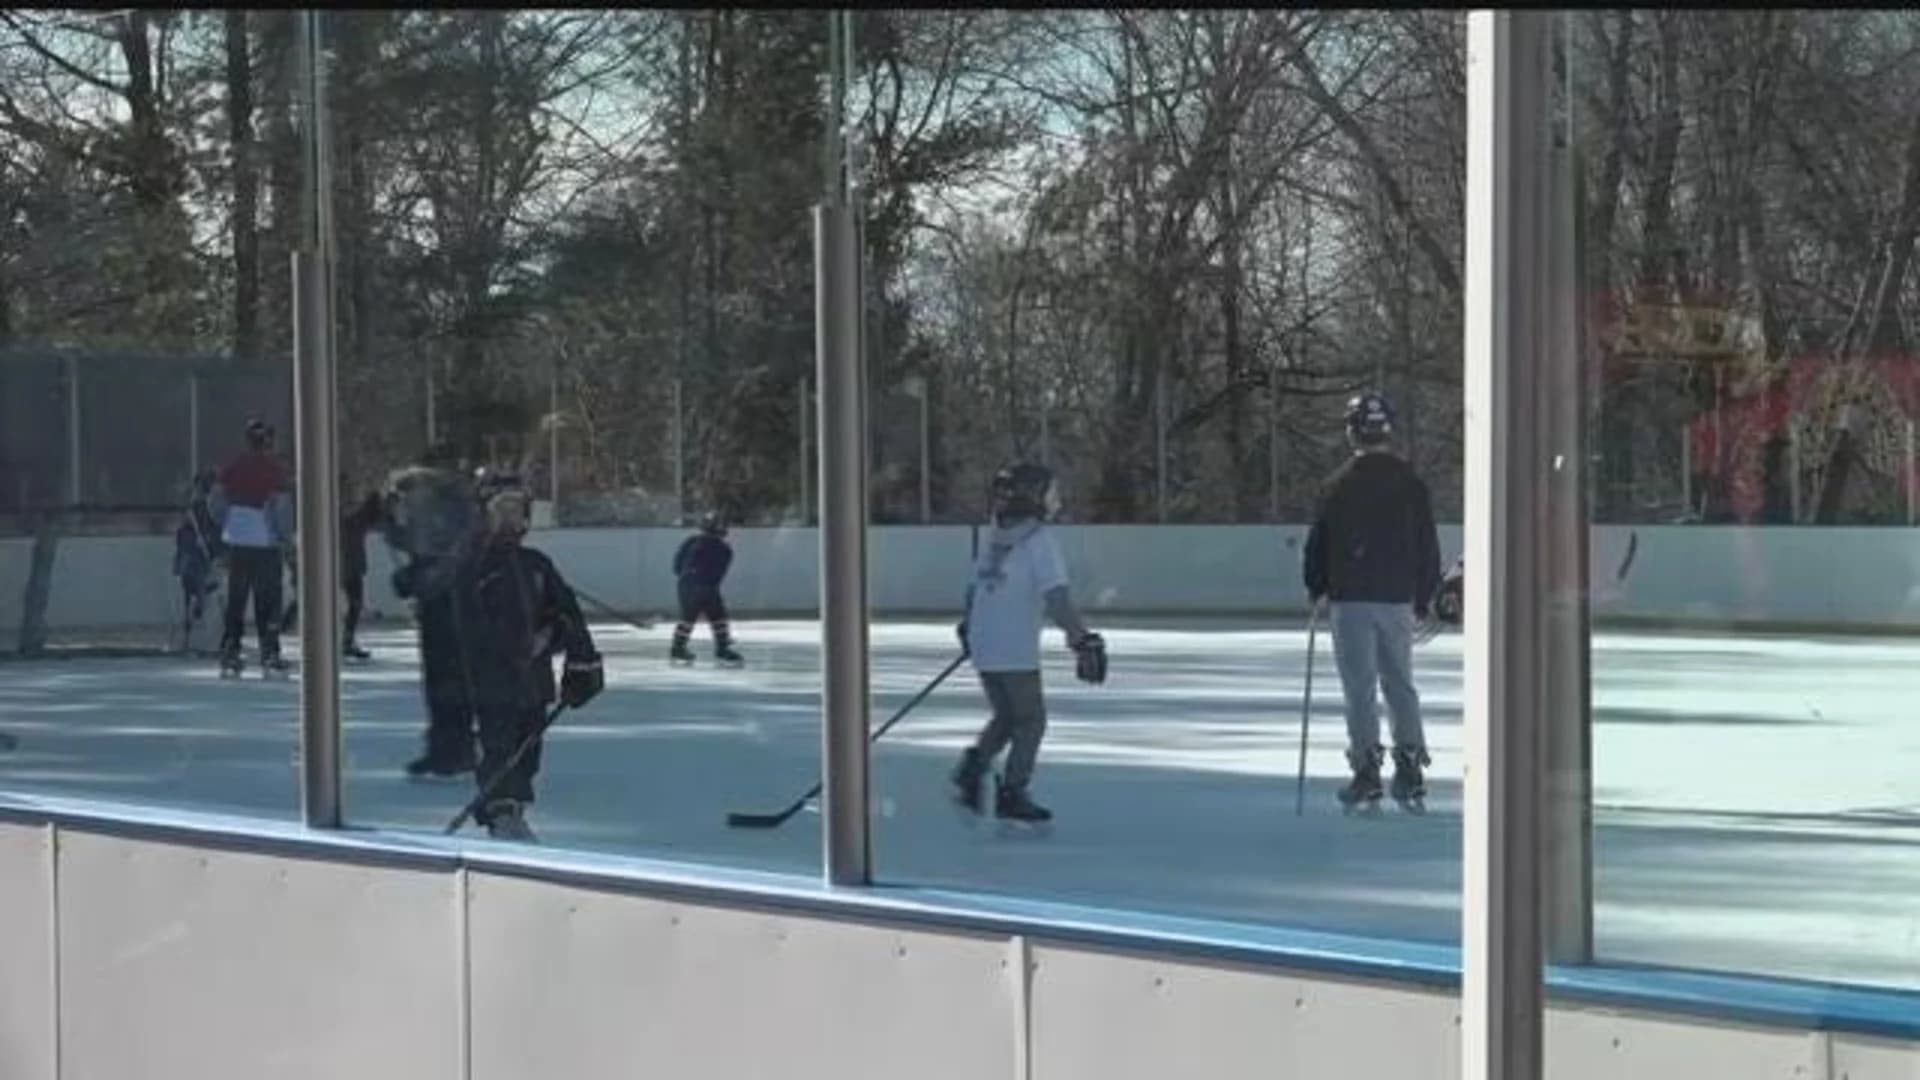 Fairfield community holds open skate fundraiser for sick child